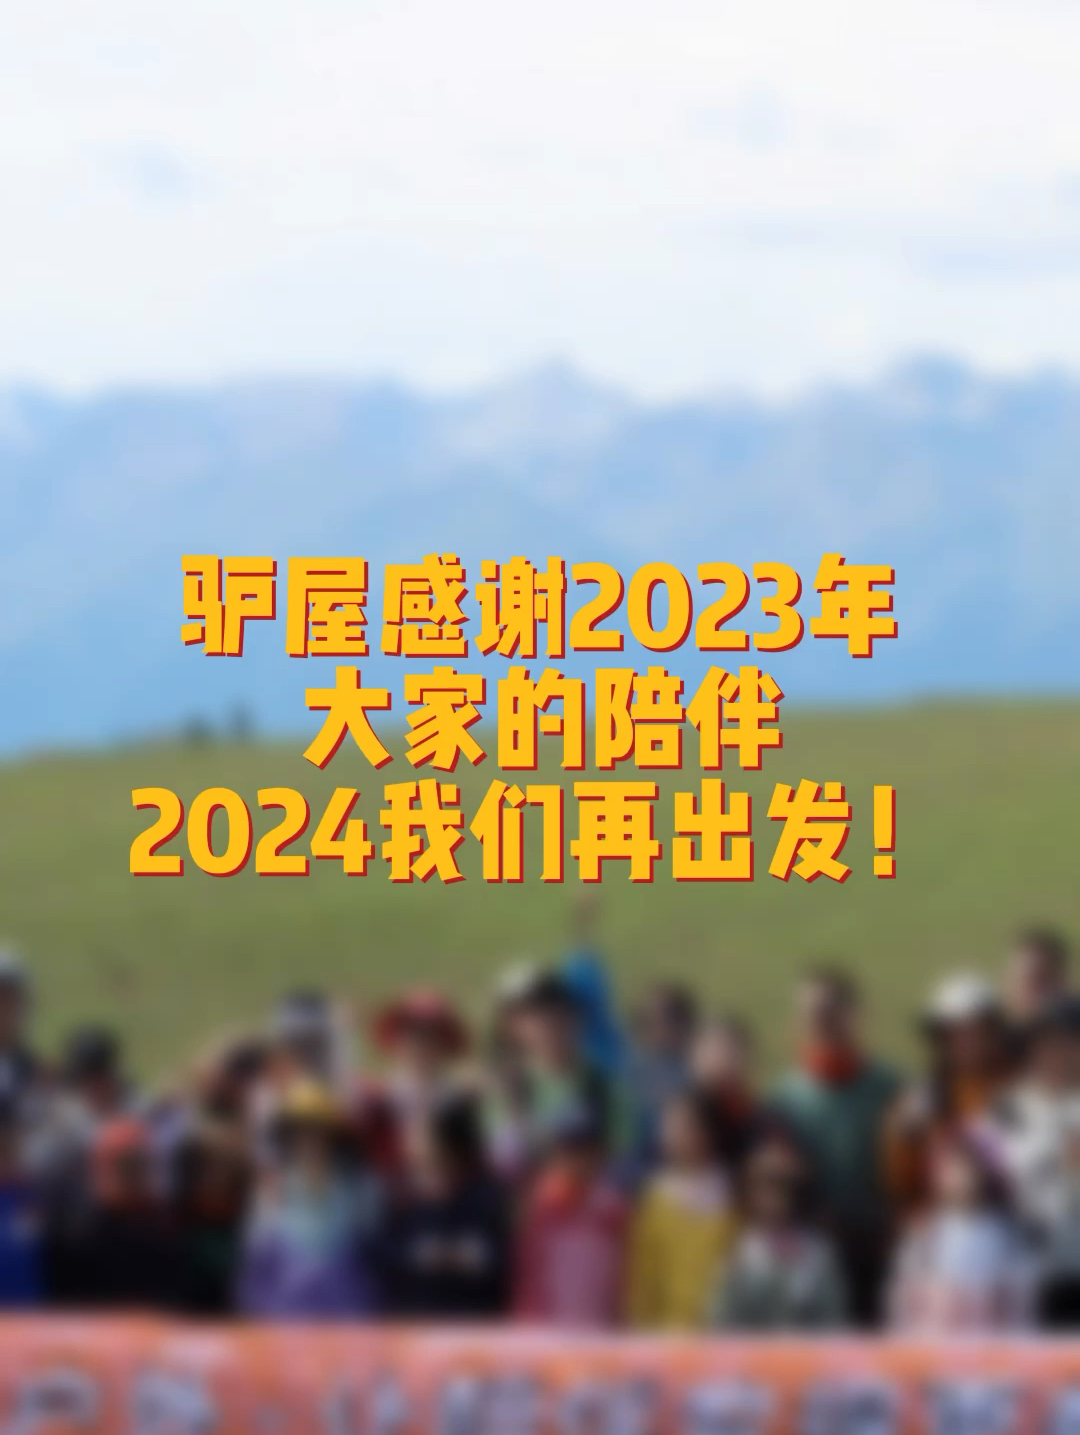 2023年小驴成功组织了296场活动，服务共计7000余人。感谢大家的一路陪伴～24年我们再出发！ 